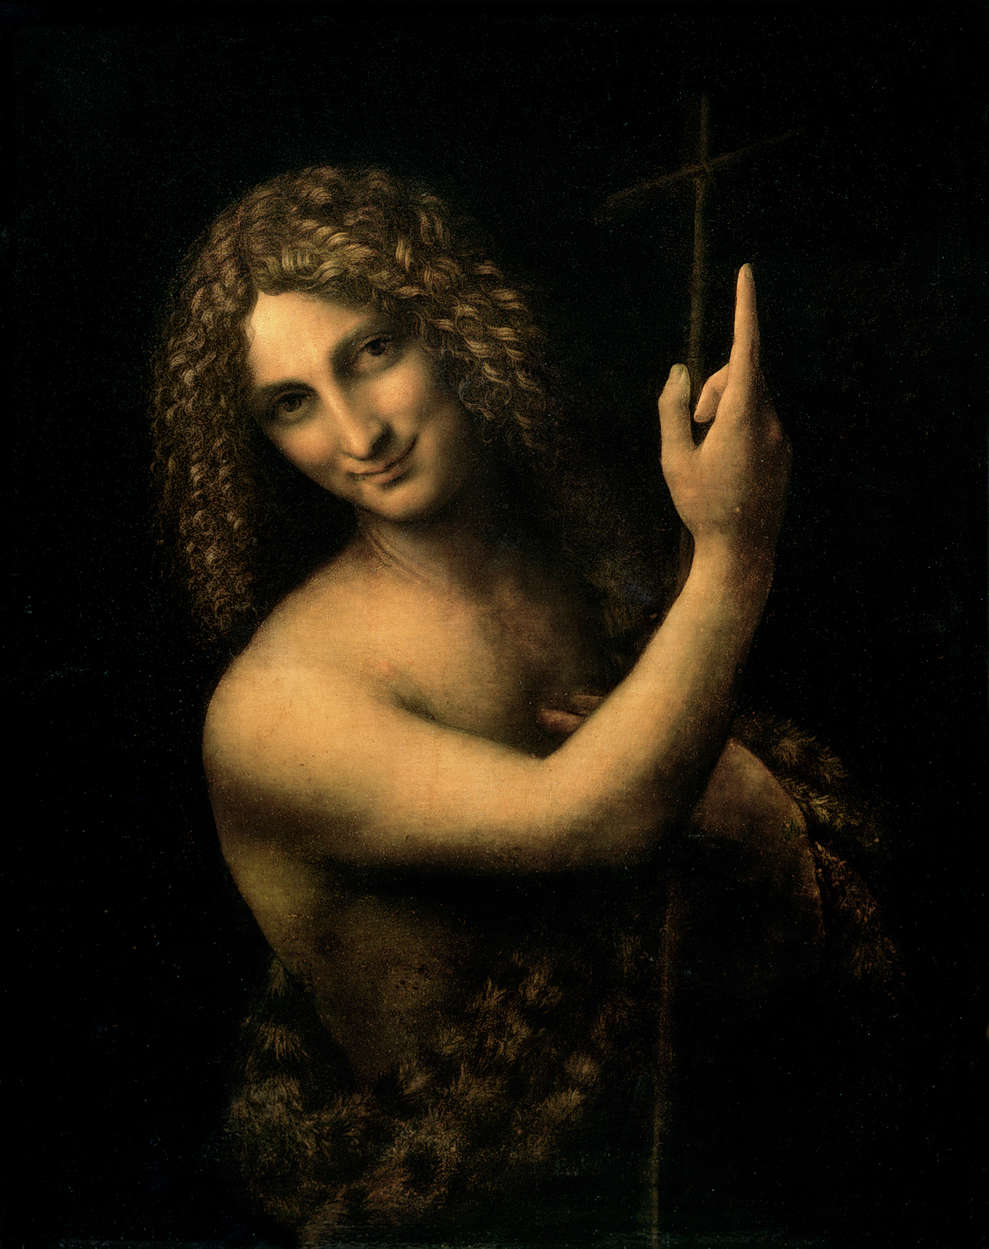             Il murale "Giovanni Battista" di Leonardo da Vinci
        